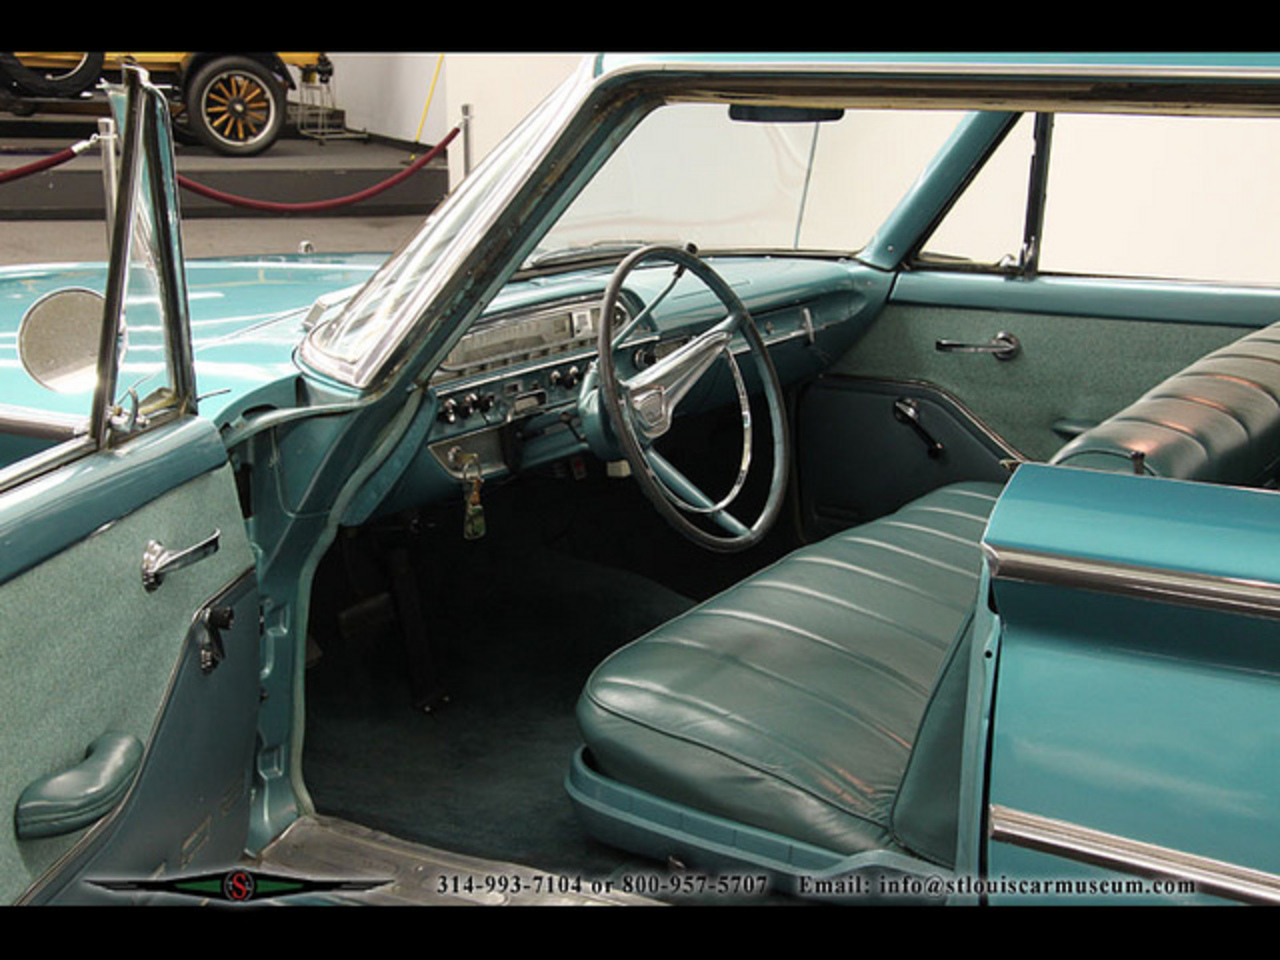 60 Edsel Ranger 4-Door Hardtop Deluxe Trim 1 of 310 | Flickr ...